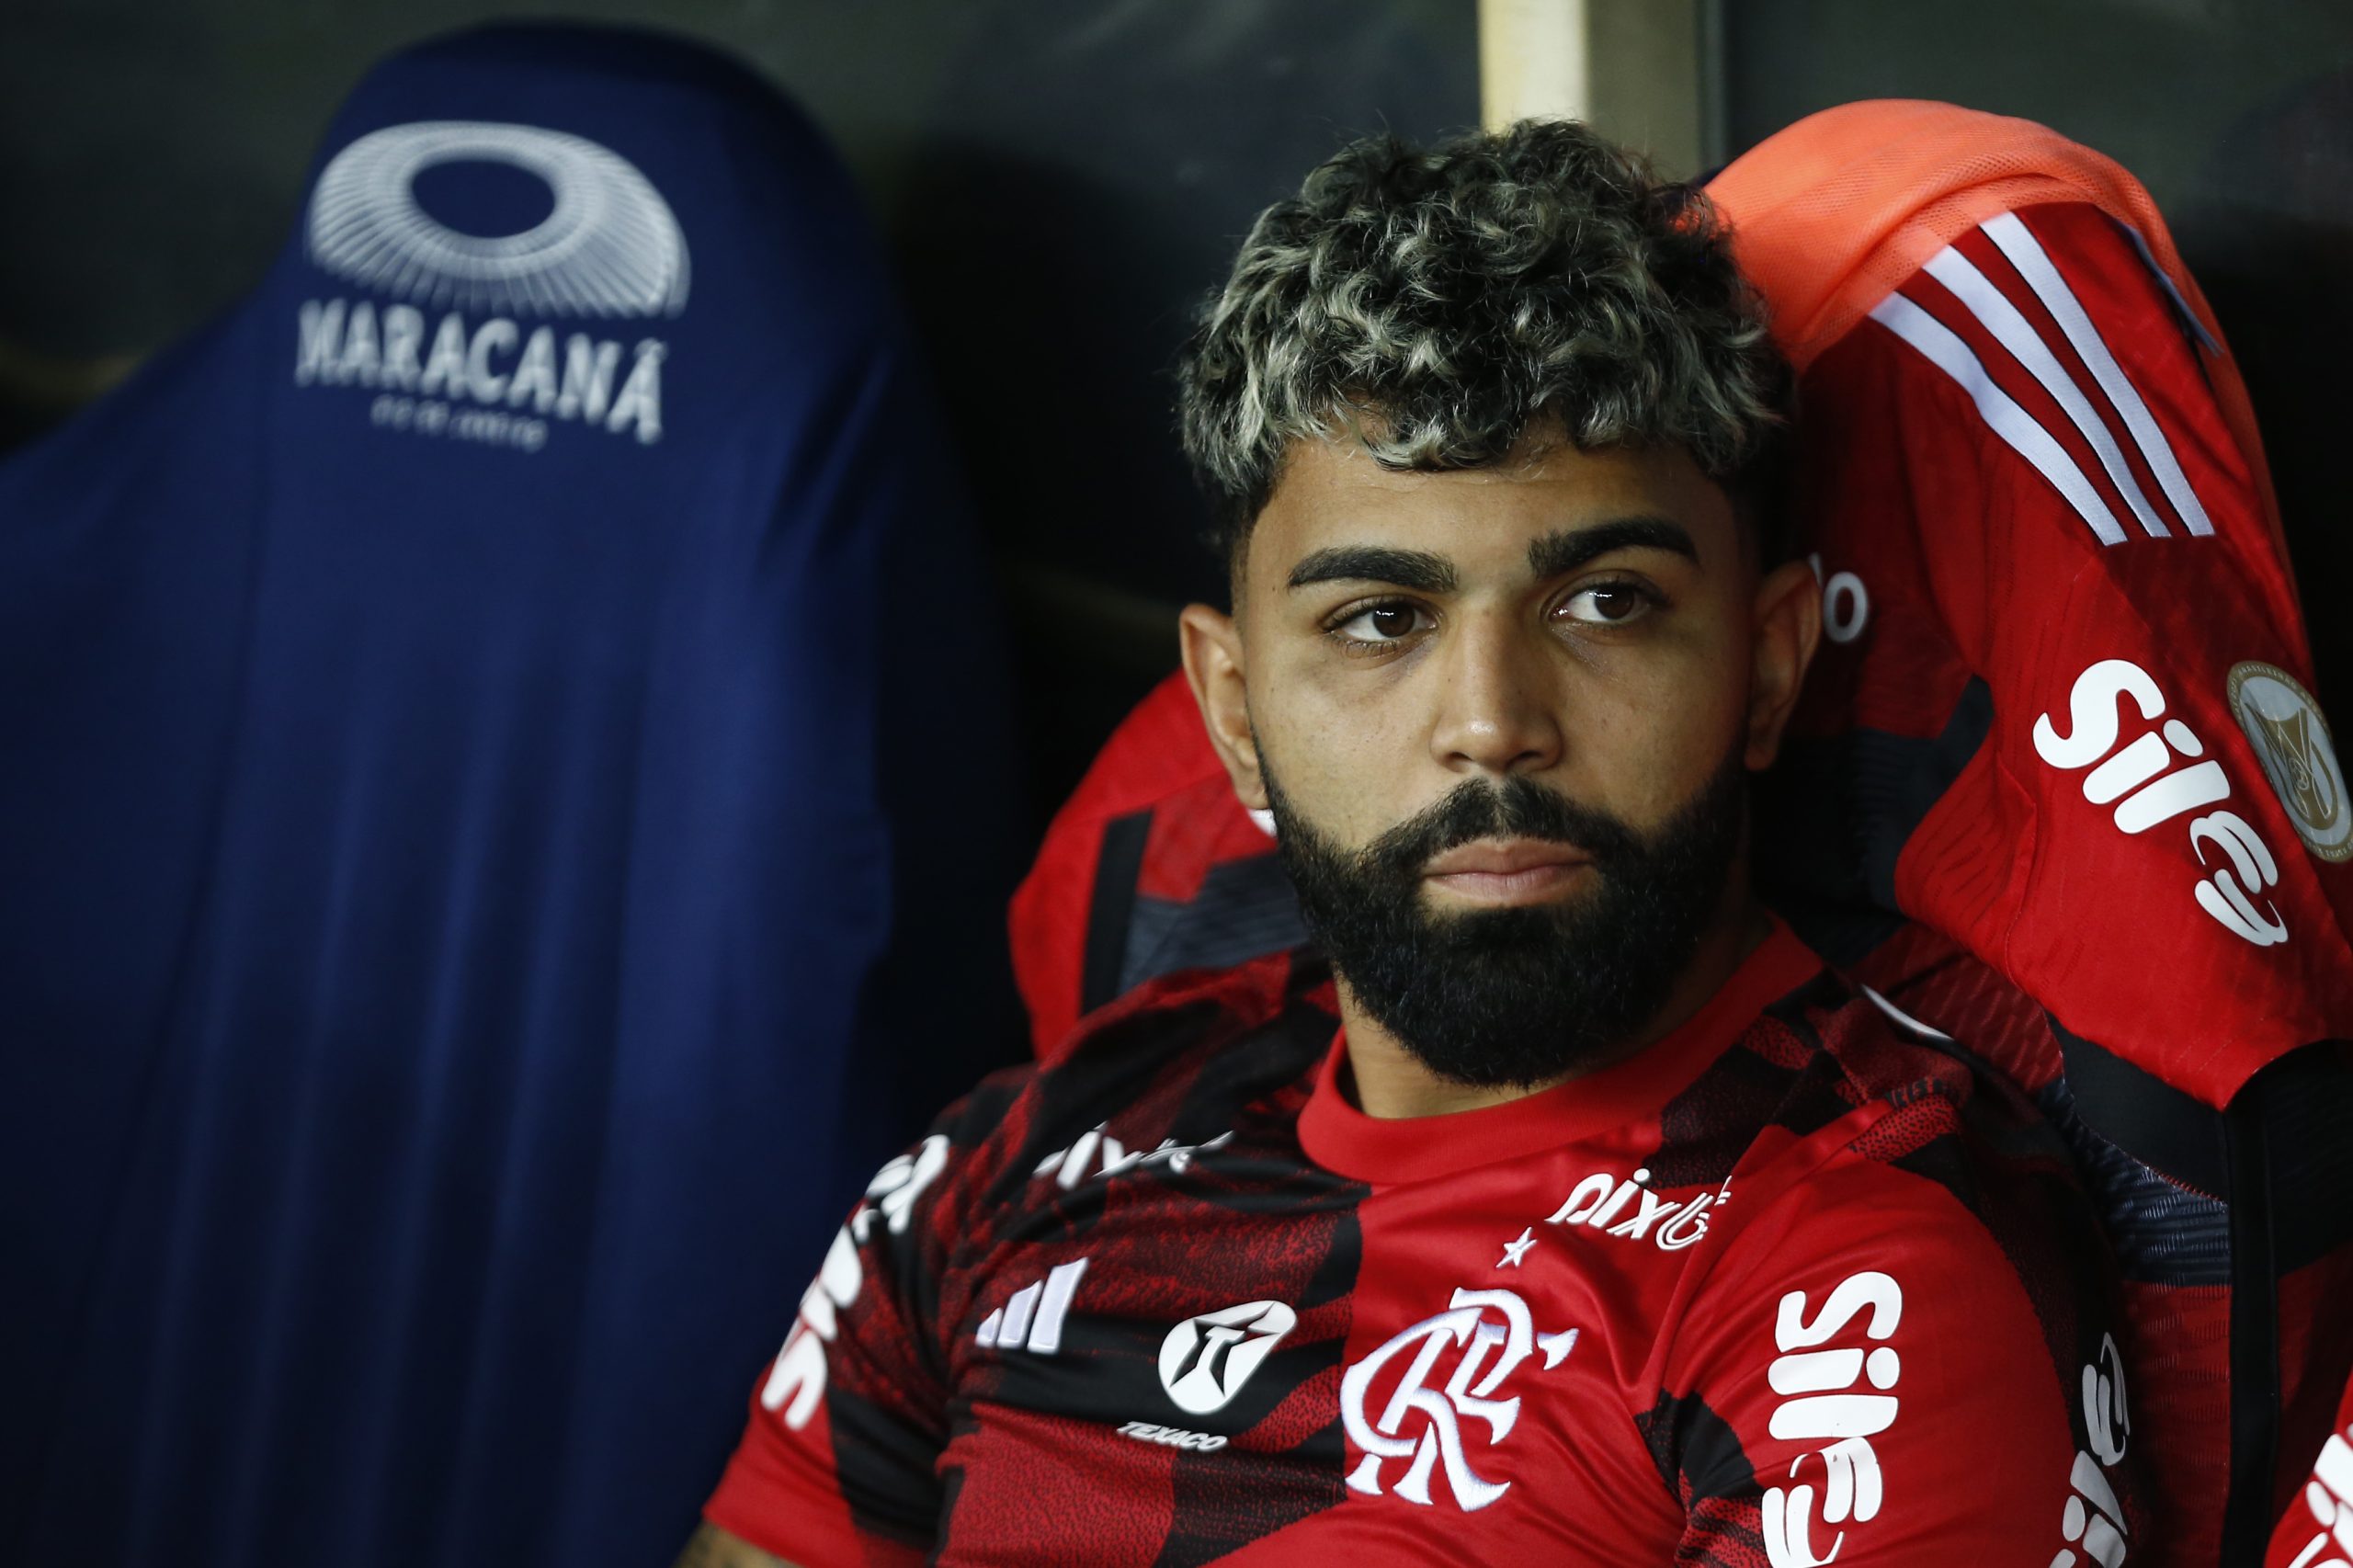 Gabigol não vive boa fase no Flamengo (Foto: Wagner Meier/Getty Images)